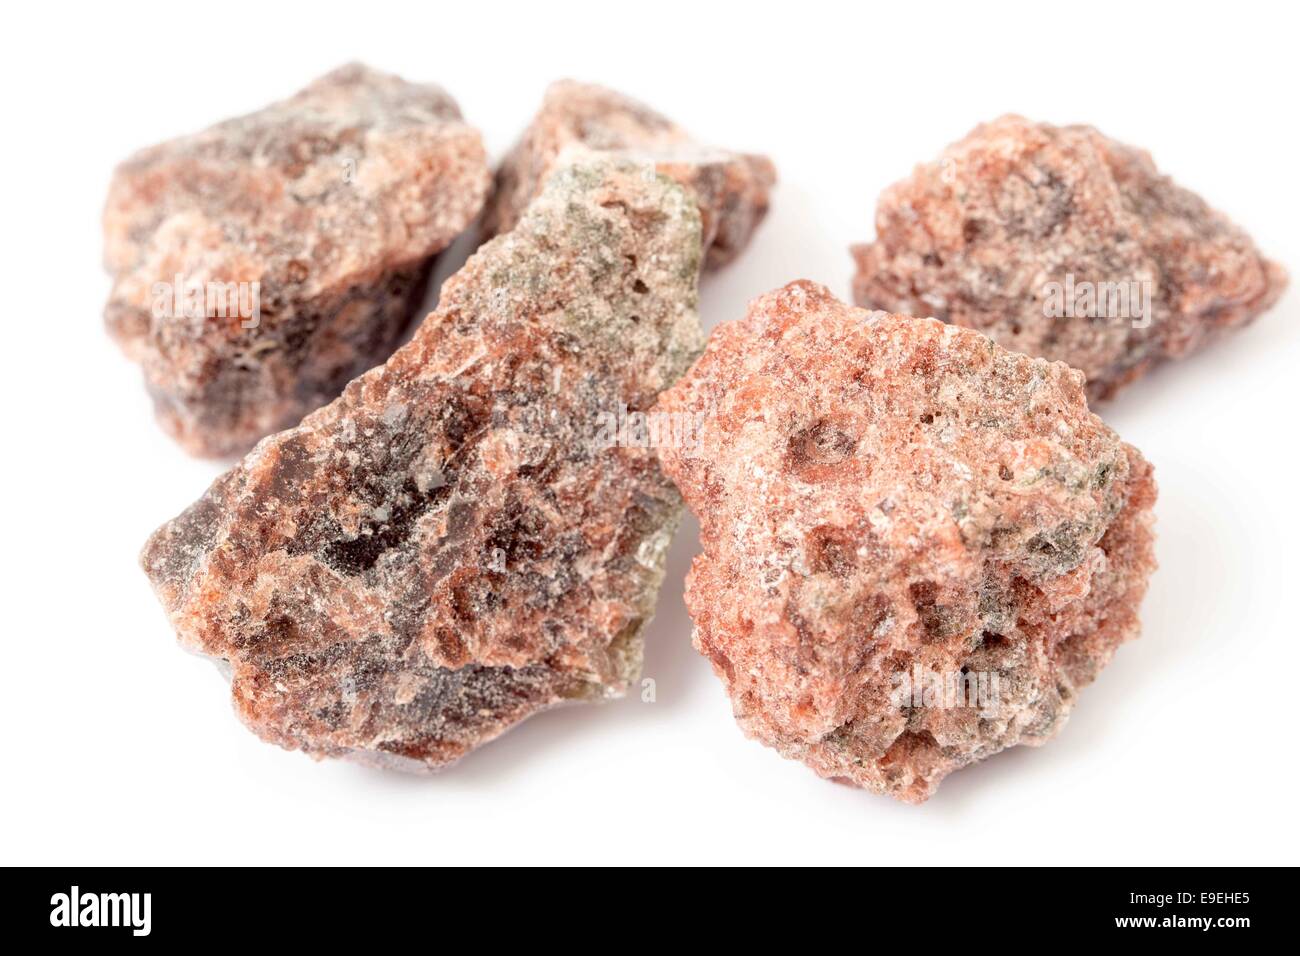 Schwarzes Salz, eine unreine Vielfalt an Steinsalz enthält Schwefelverbindungen, in der indischen Küche verwendet. Stockfoto